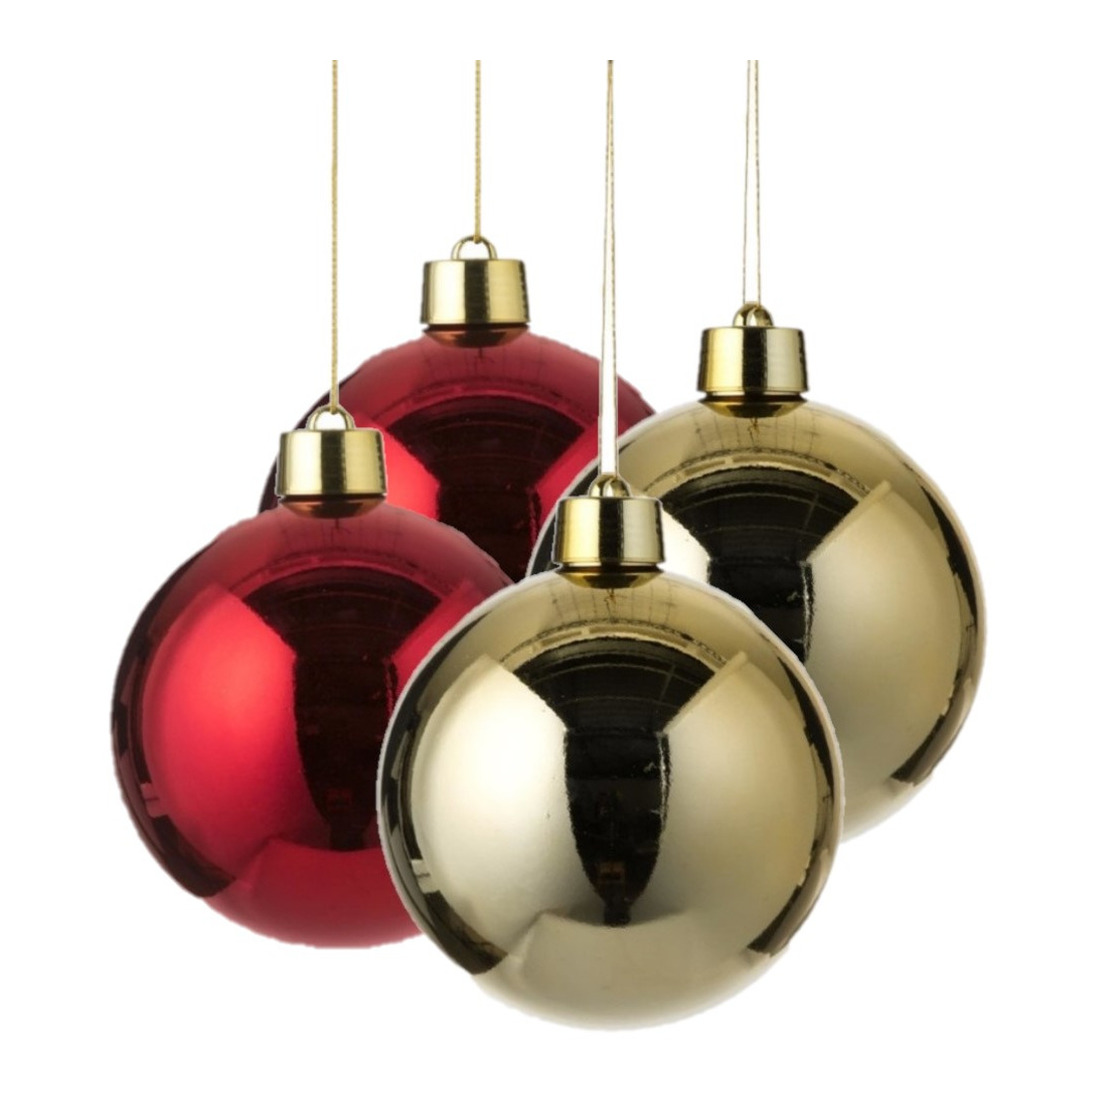 Kerstversieringen set van 4x grote kunststof kerstballen rood en goud 20 cm glans - 2x stuks per kleur